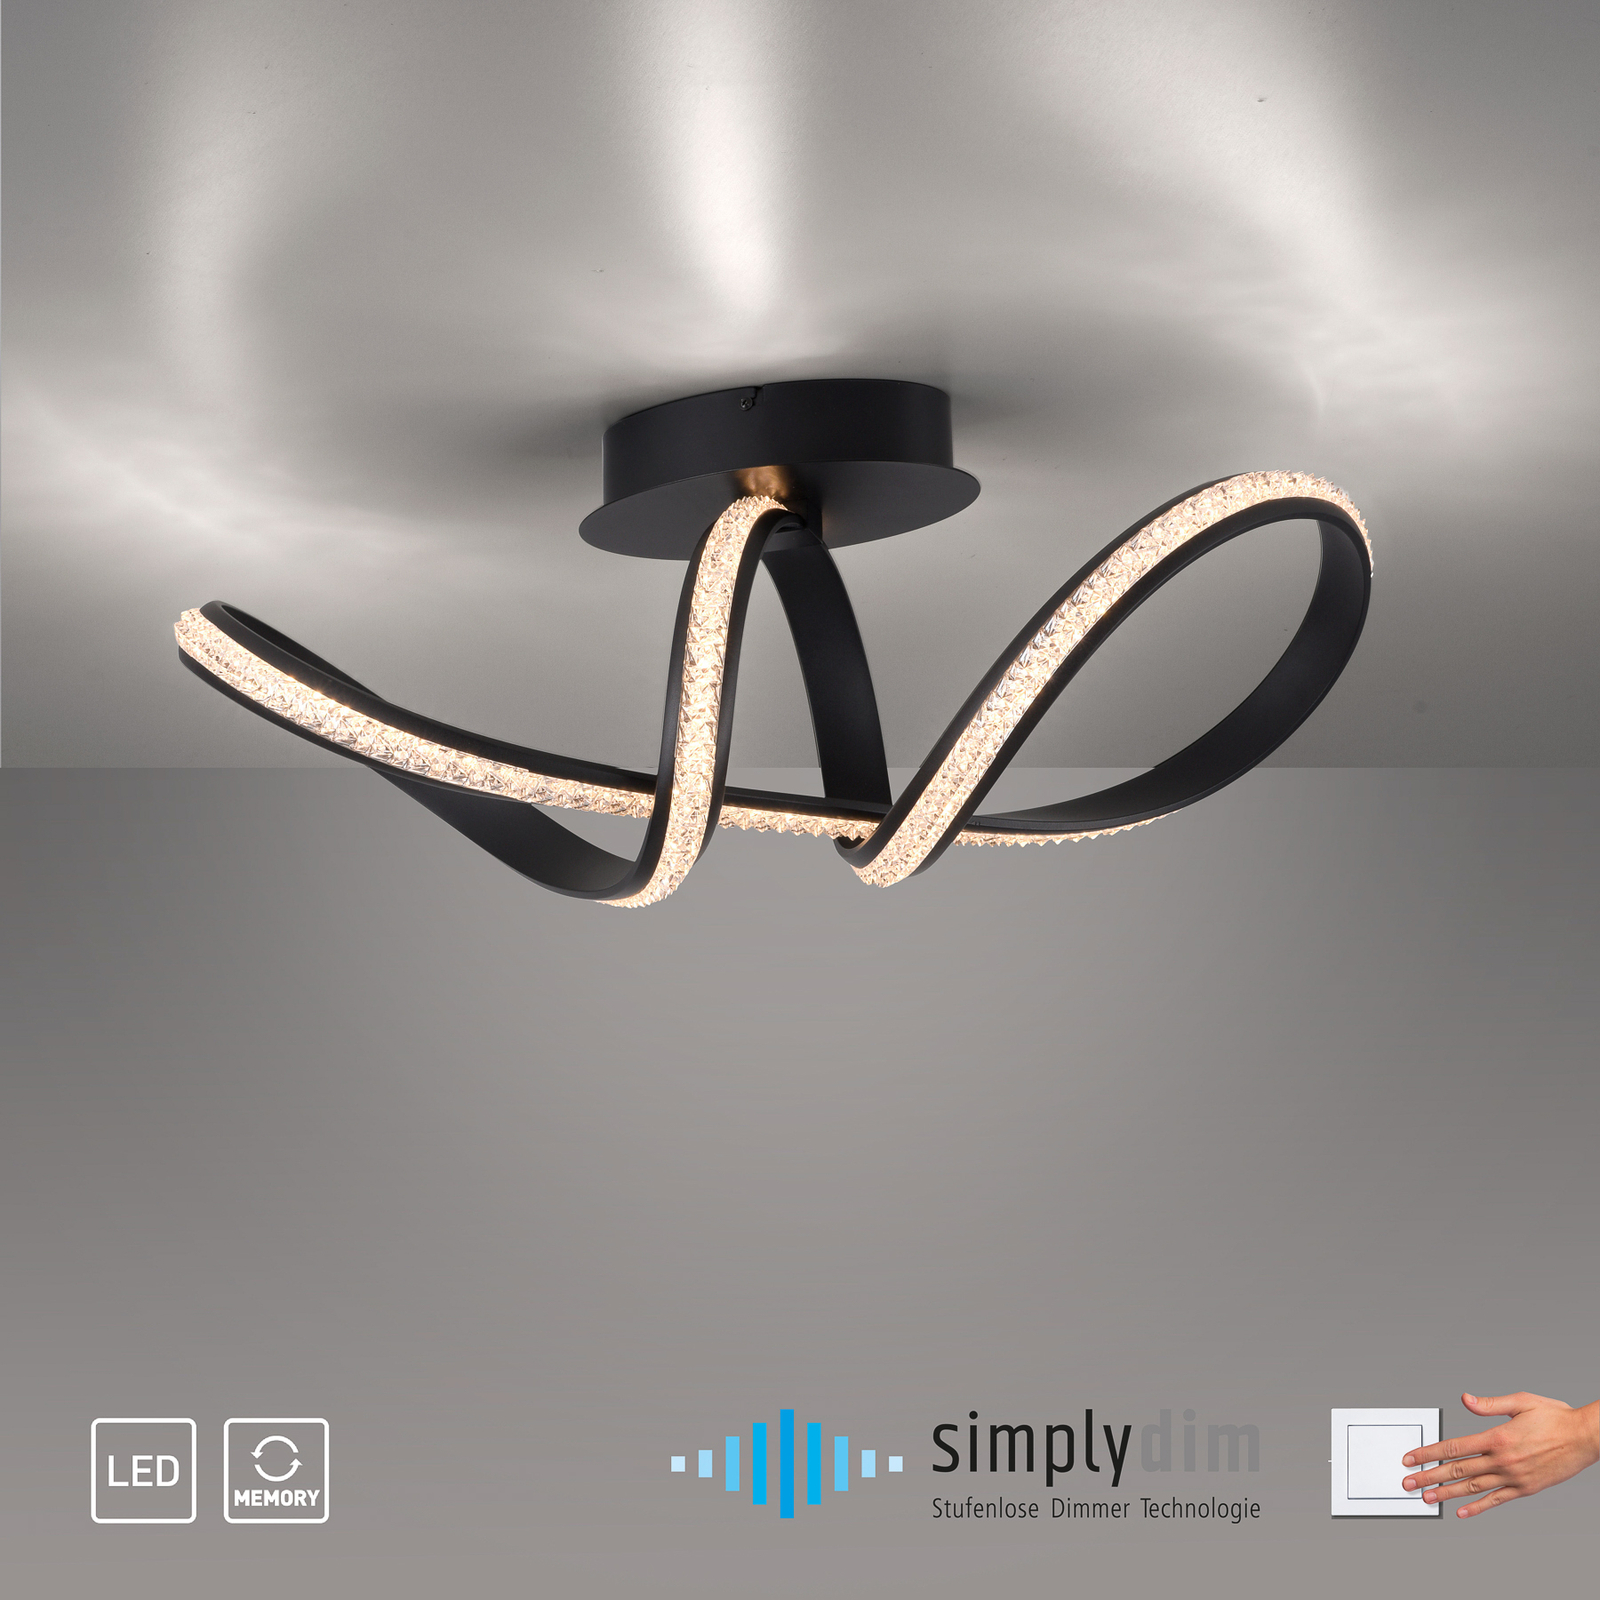 Φωτιστικό οροφής Brilla LED, με δυνατότητα ρύθμισης του φωτισμού